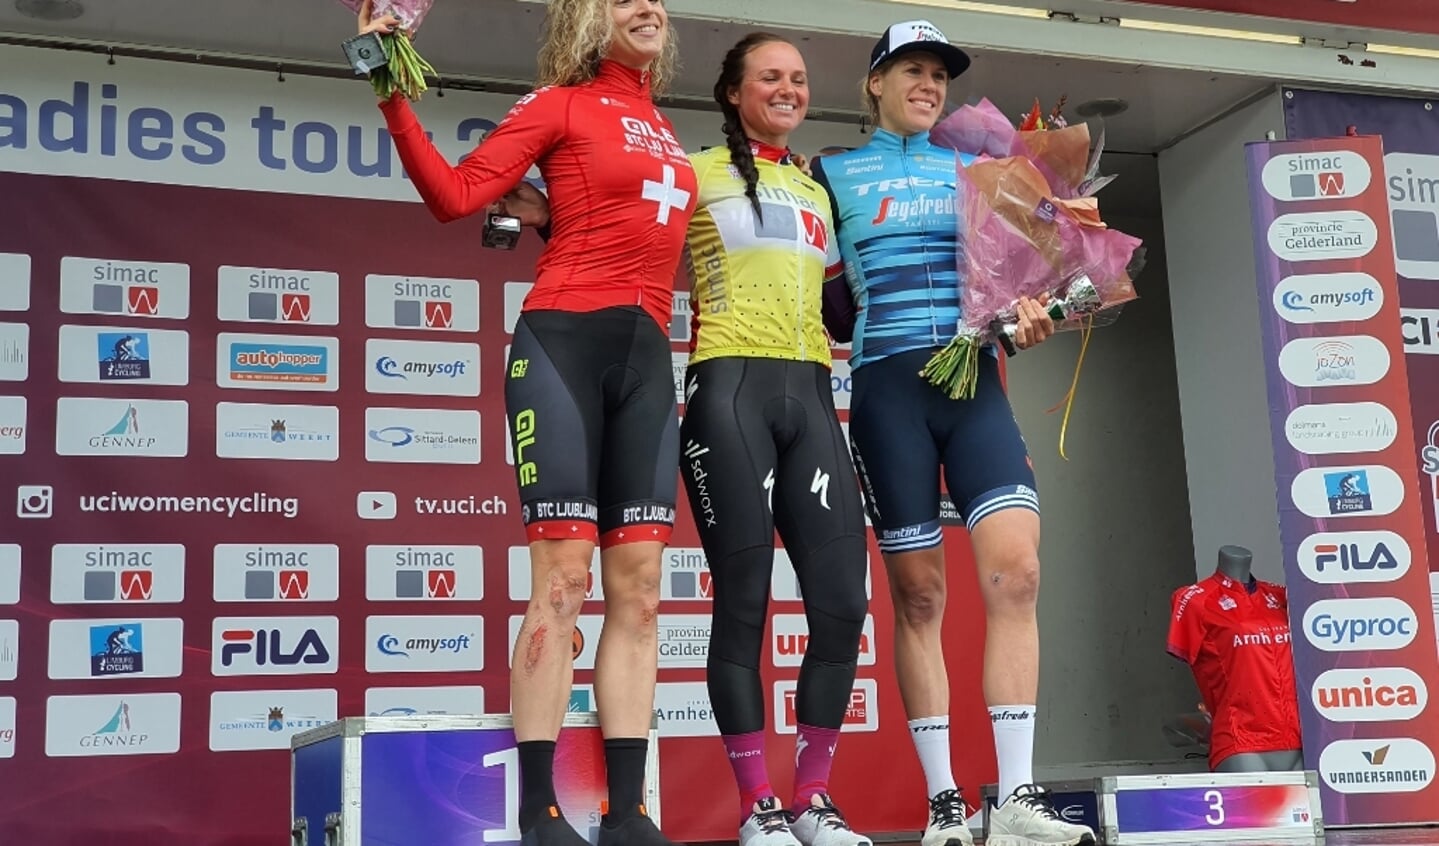 De top drie van de Simac Ladies Tour 2021: In de gele leiderstrui Cantal Van den Broek-Blaak, links de nummer twee, de Zitserse Marlen Reusser en rechts de nummer drie Ellen van Dijk.